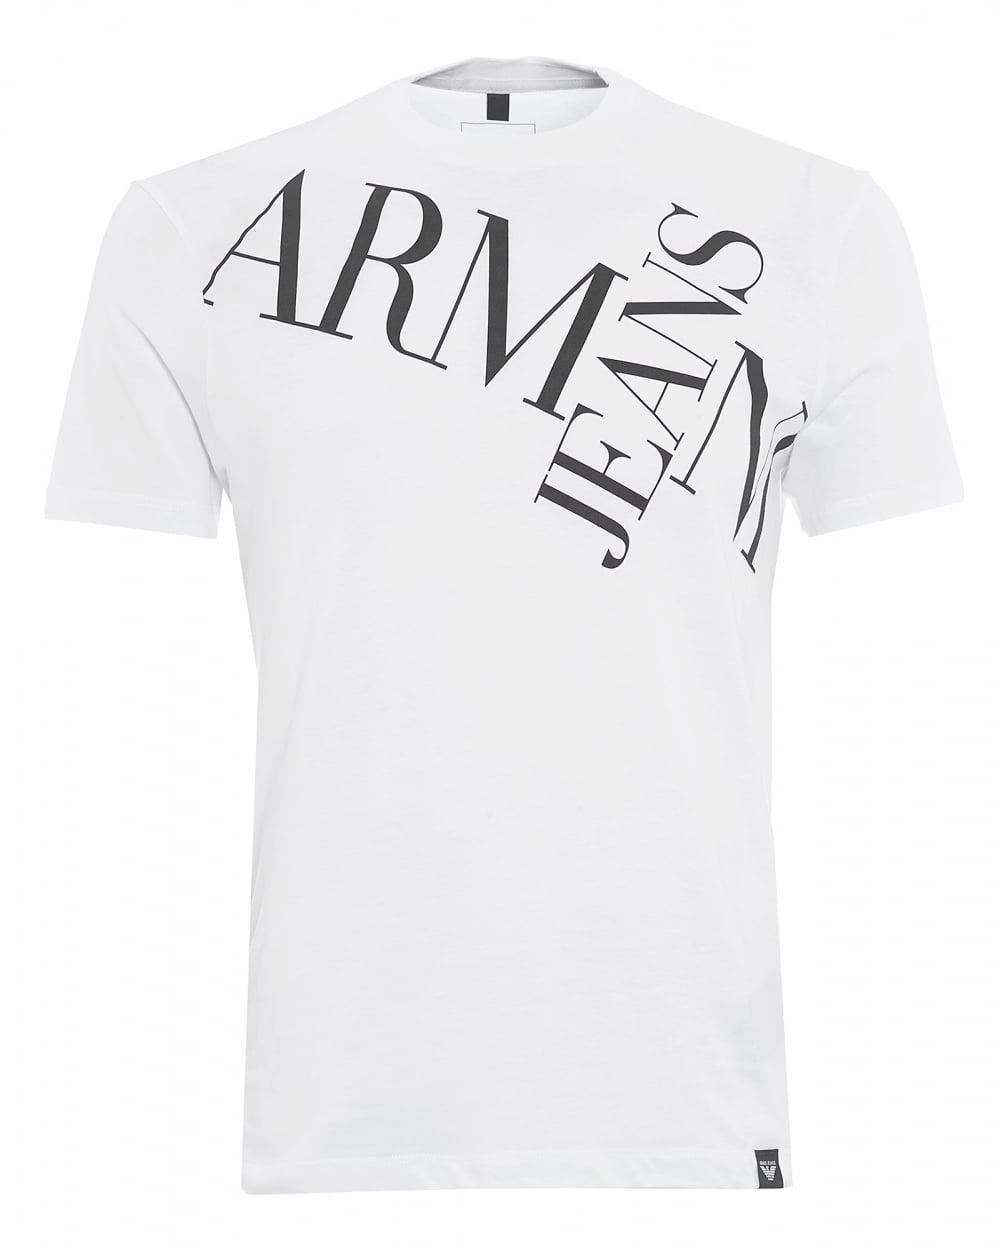 T and Cross Logo - Armani Jeans Mens Letter Cross T Shirt, Letter Logo White Tee